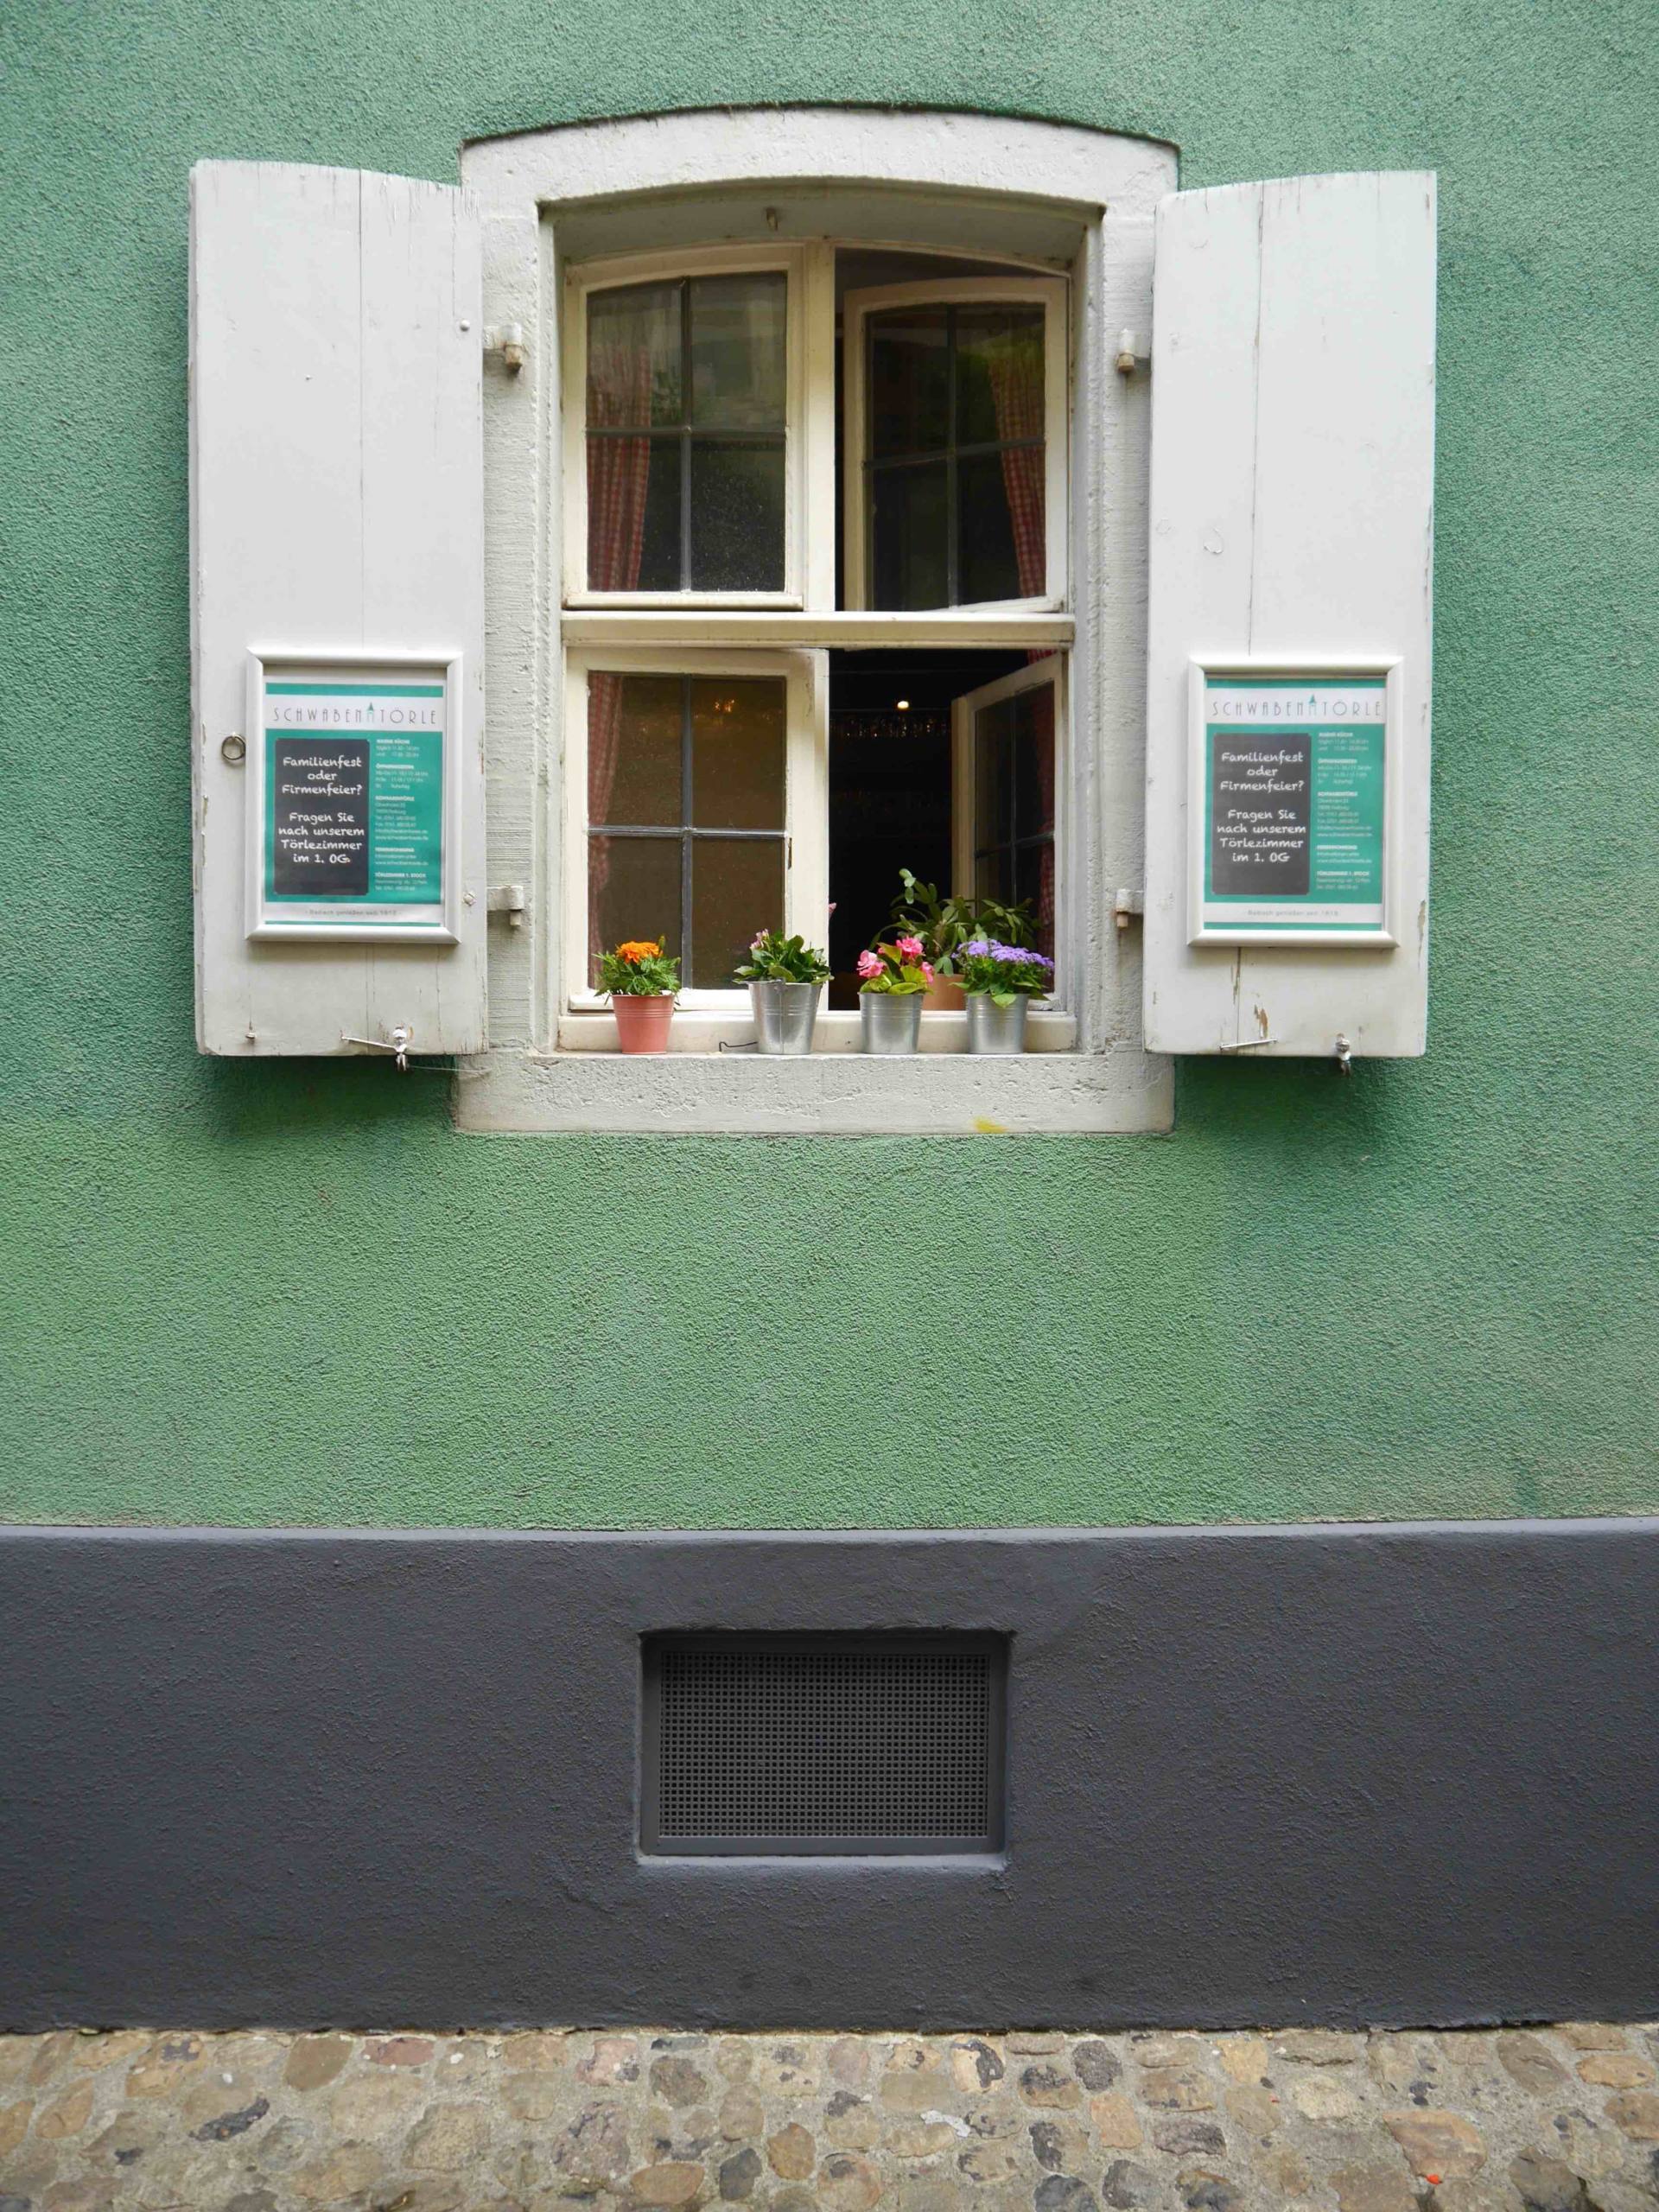 Muro verde con persianas blancas | Los lugares más instagrameables de Friburgo